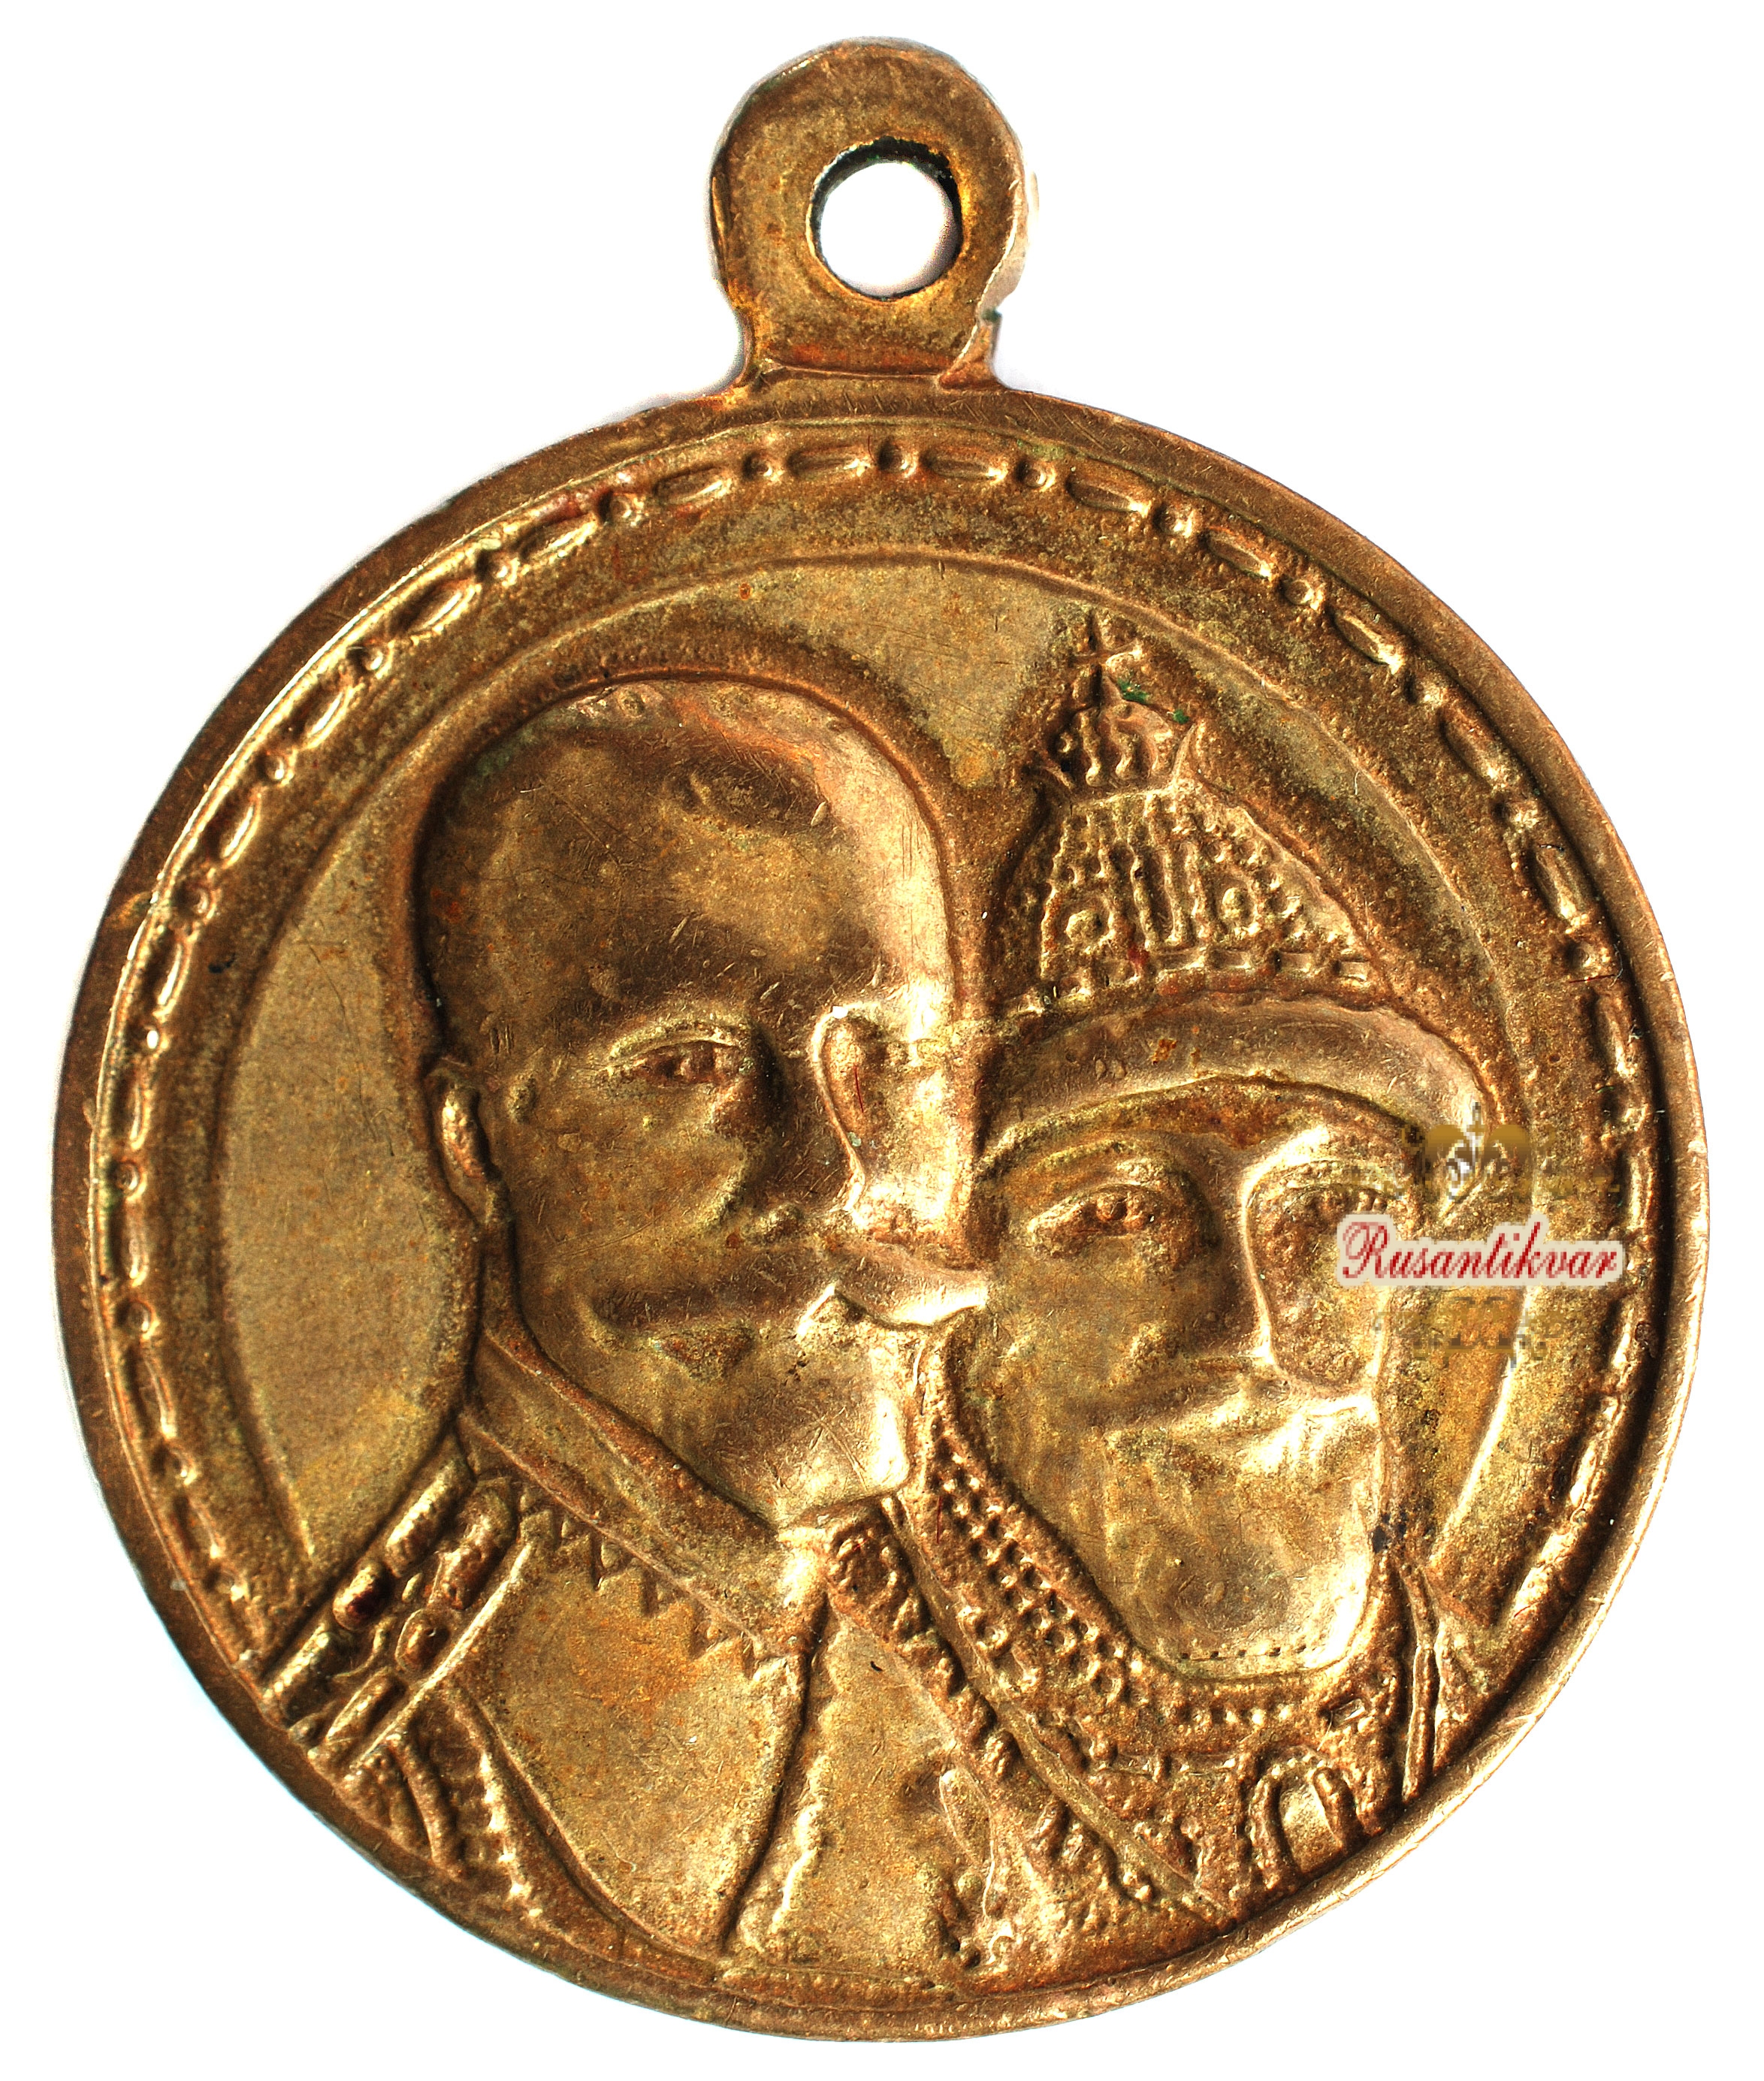 Медаль "В память 300-летия царствования дома Романовых" "частник" ,крест на шапке Михаила касается сплошной черты, глубокий рельеф